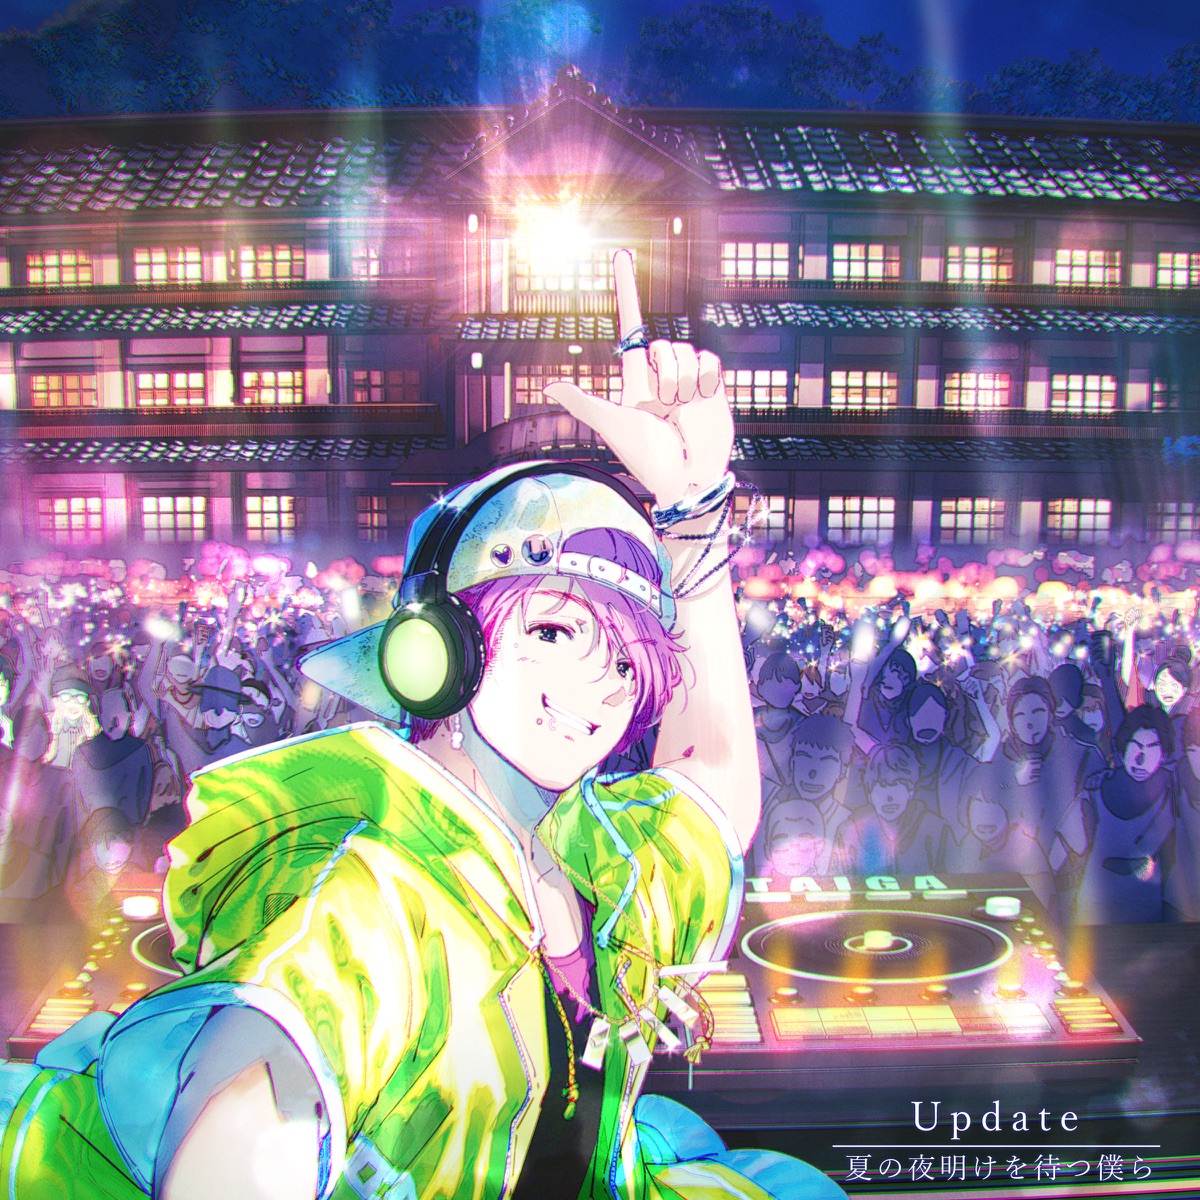 Cover art for『*Luna×Oto Hatsuki - Update feat. Dream Shizuka, わきを from よさこいバンキッシュ』from the release『Update feat. Dream Shizuka, Wakio from Yasakoi Vanquish